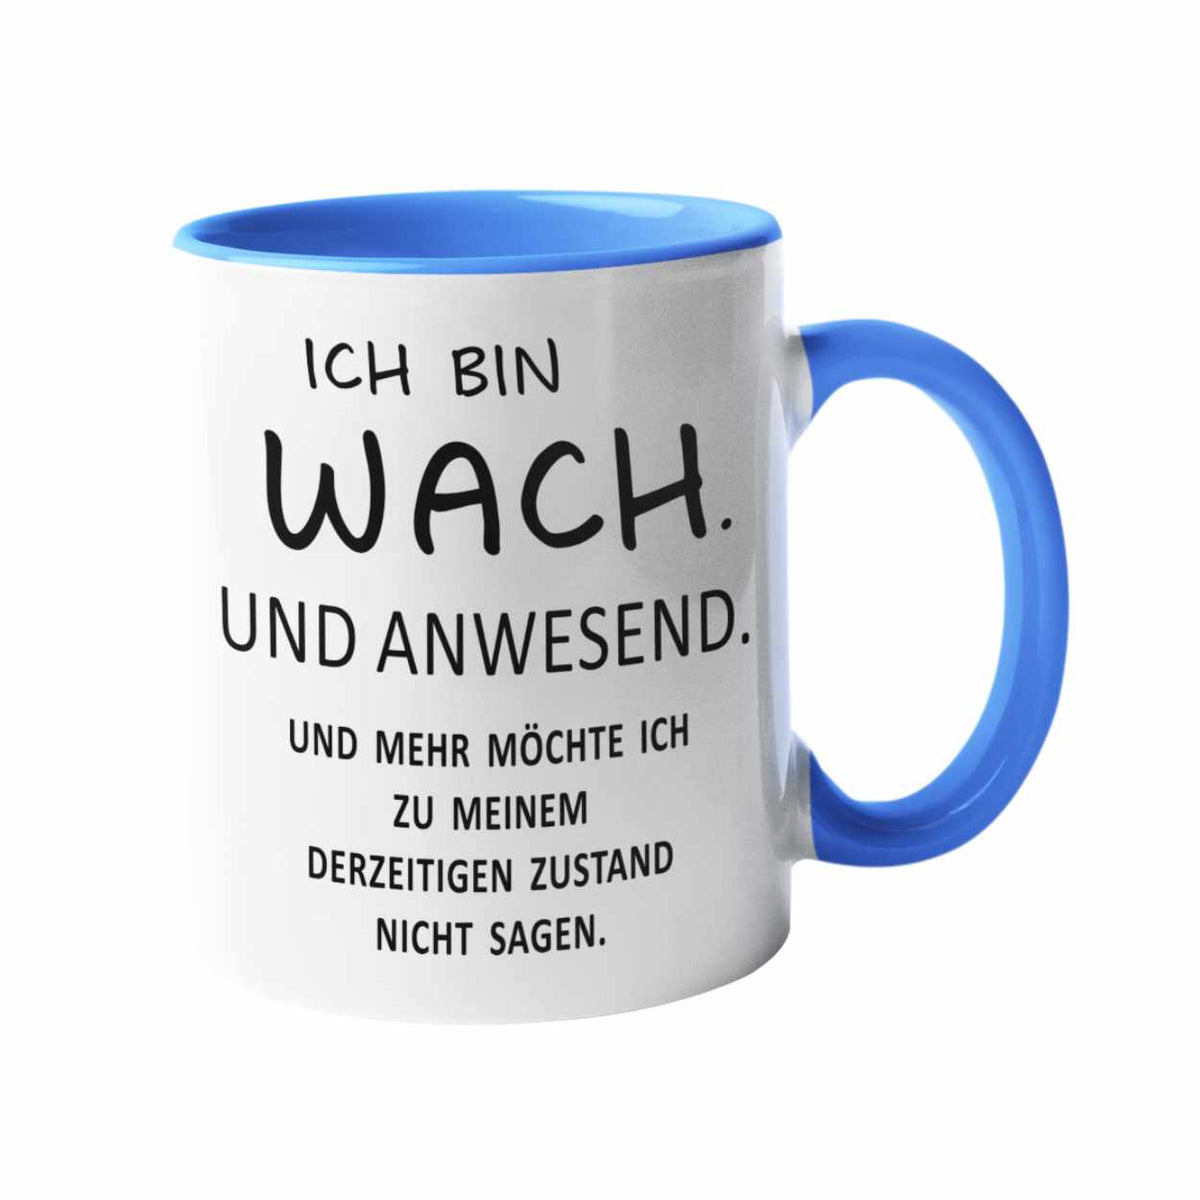 Tasse mit Spruch - ICH BIN WACH. UND ANWESEND. versch. Farben Spruchtassen Druckerino Blau  